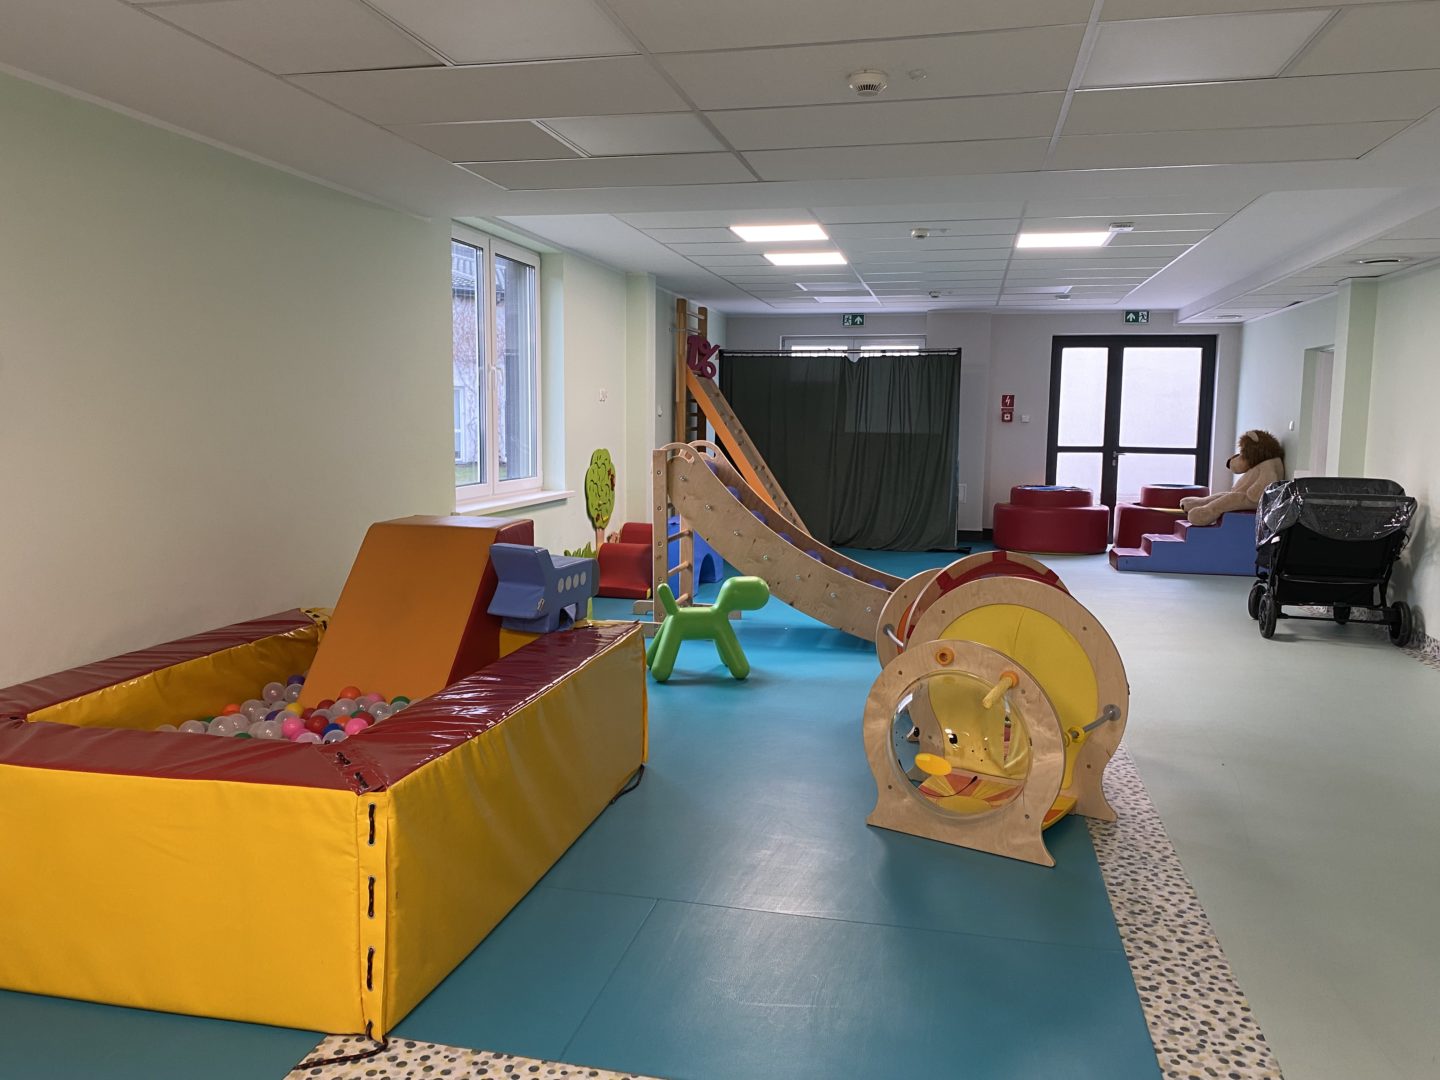 Zdjęcie przedstawia salę zabaw w nowej specjalistycznej placówce dla dzieci znajdującej się w Kraszewie gmina Raciąż